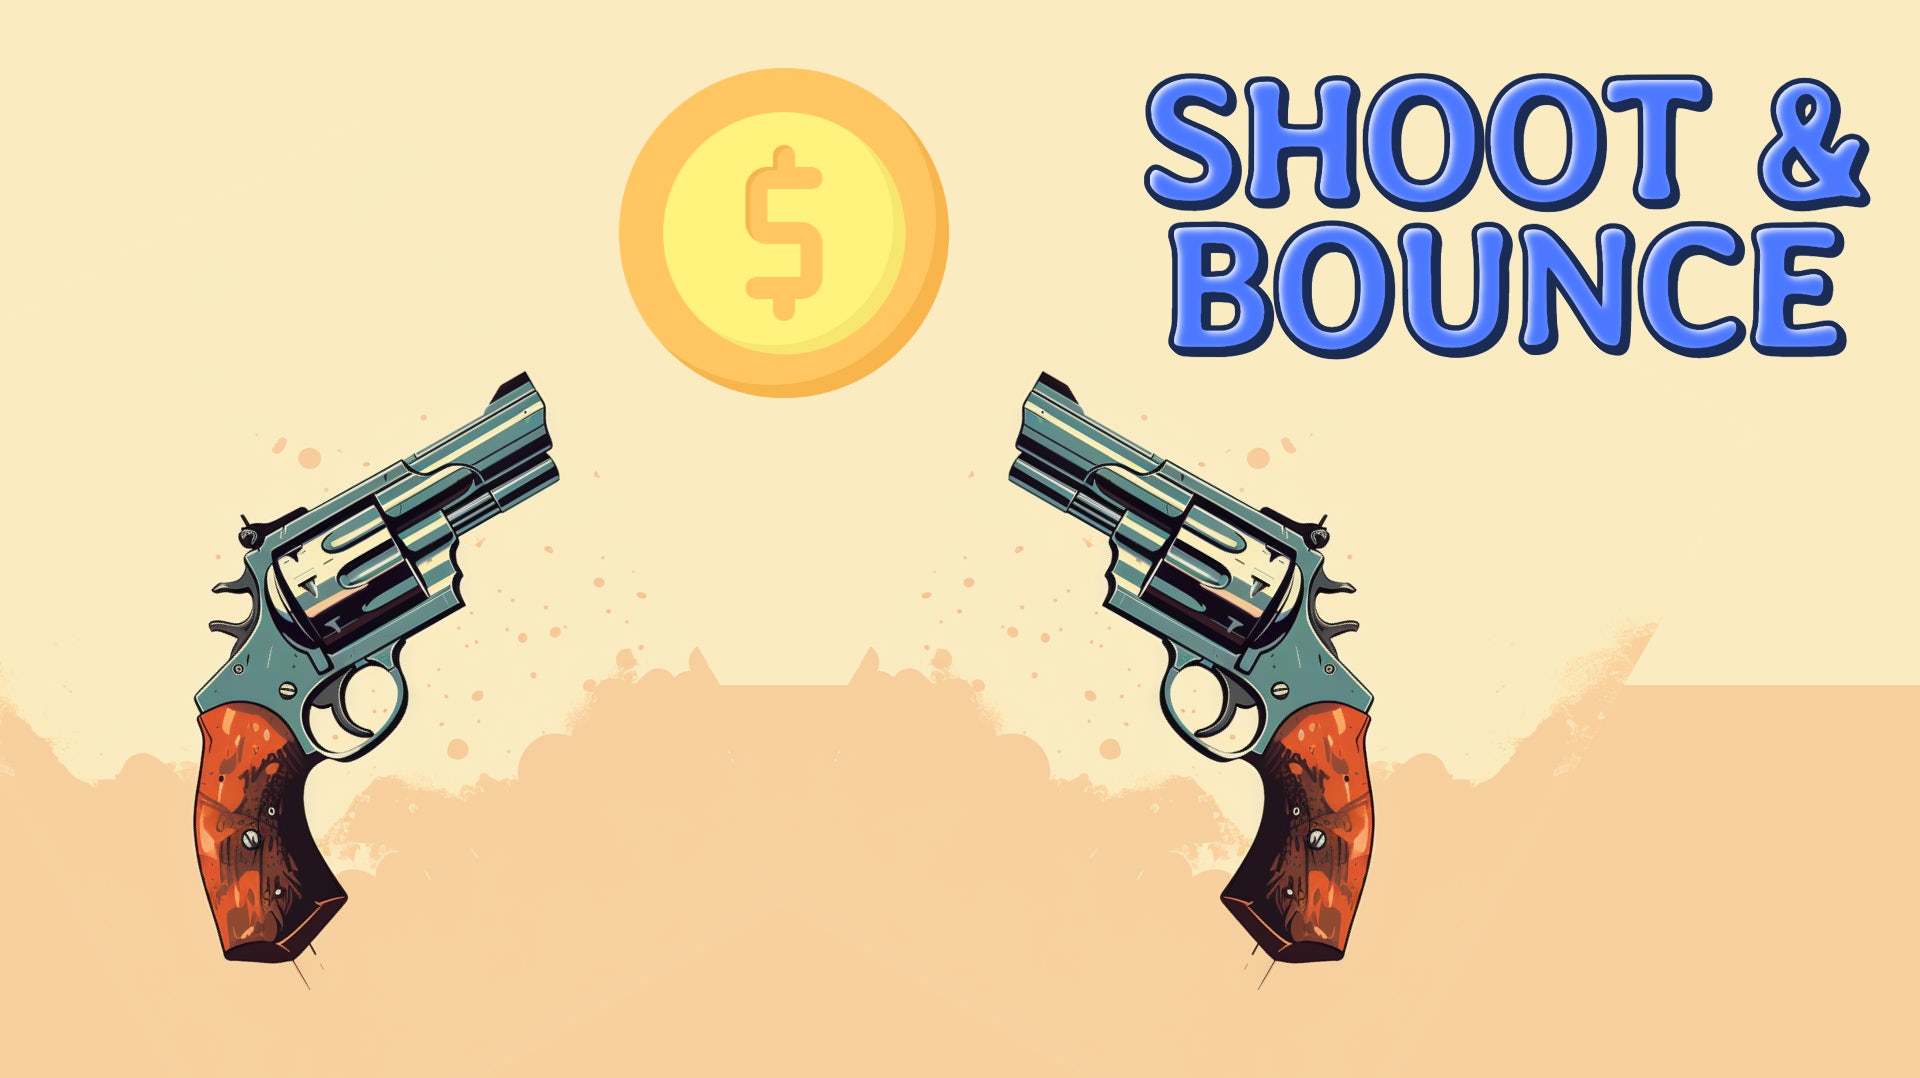 Shoot & Bounce!